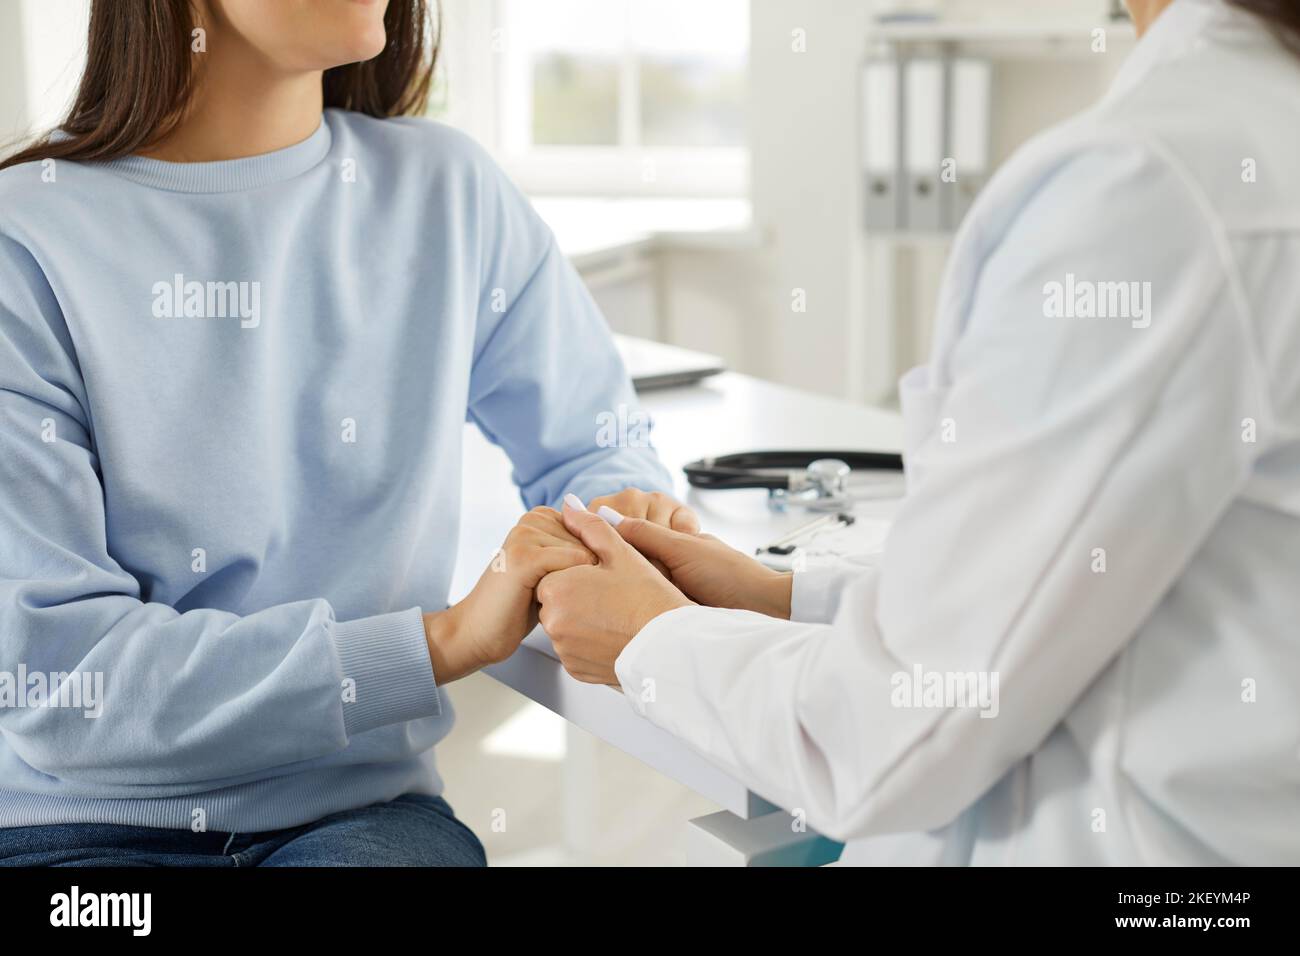 La dottoressa tiene la mano della paziente femminile, confortandola, esprimendo simpatia e sostegno. Foto Stock